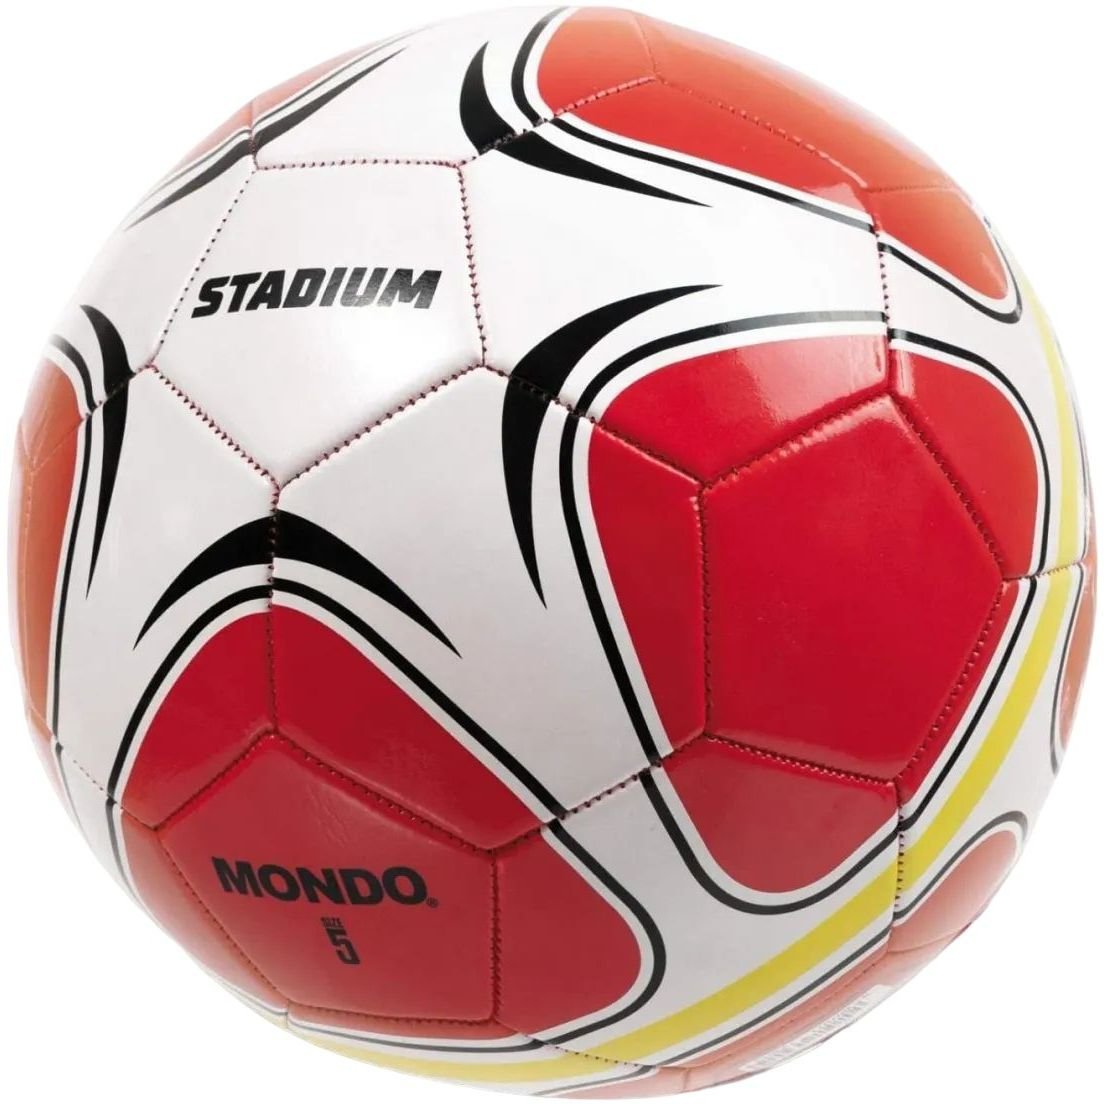 Футбольный мяч Mondo Stadium, размер 5, красный (13901) - фото 1